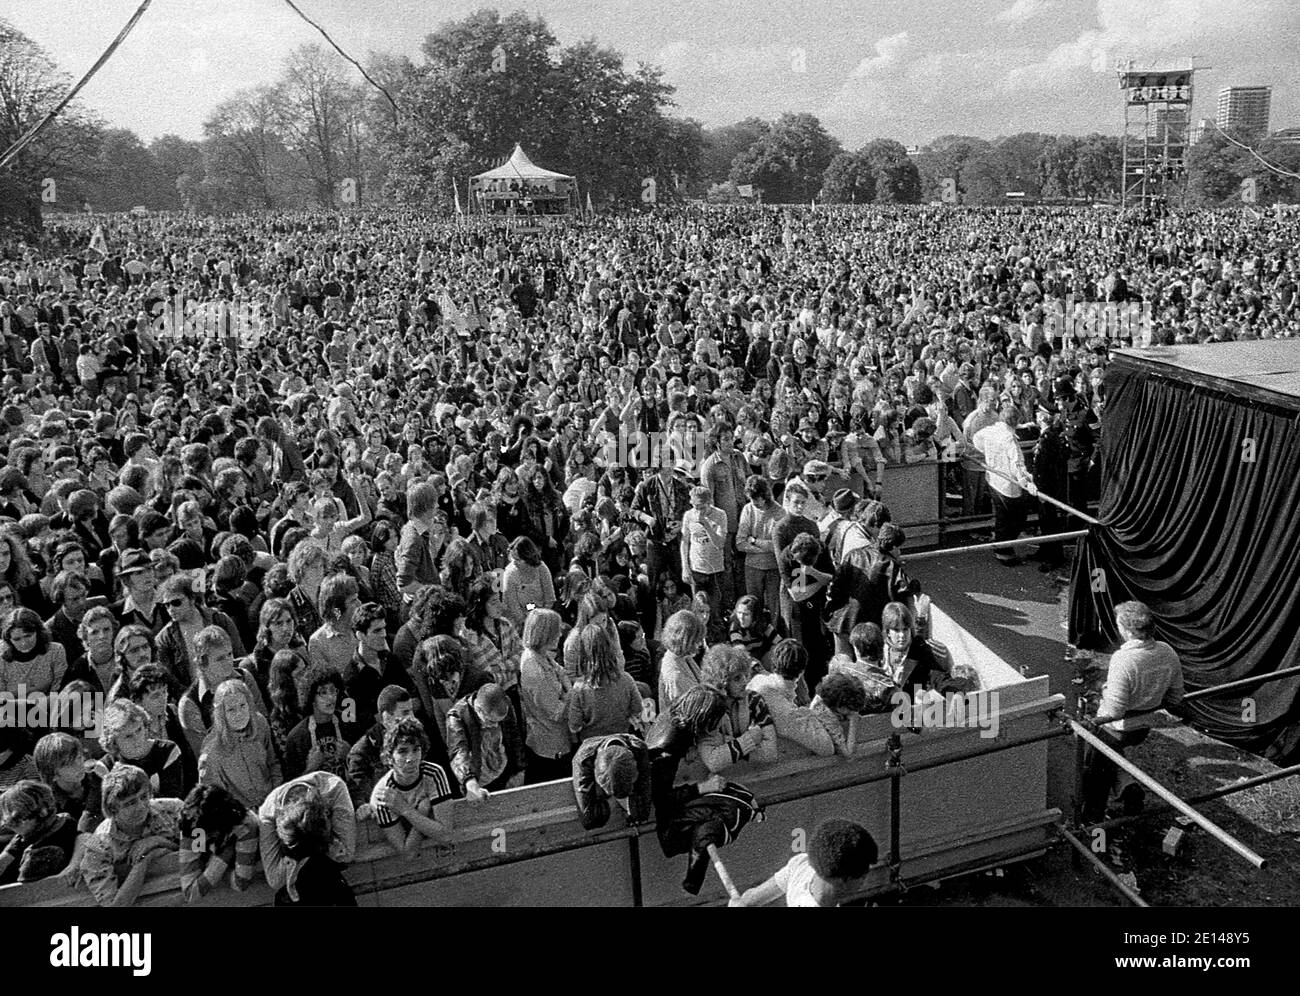 Queen Live in Hyde Park London 18/9/1976. Kostenloses Konzert mit 150,000 Fans im Park. Stockfoto